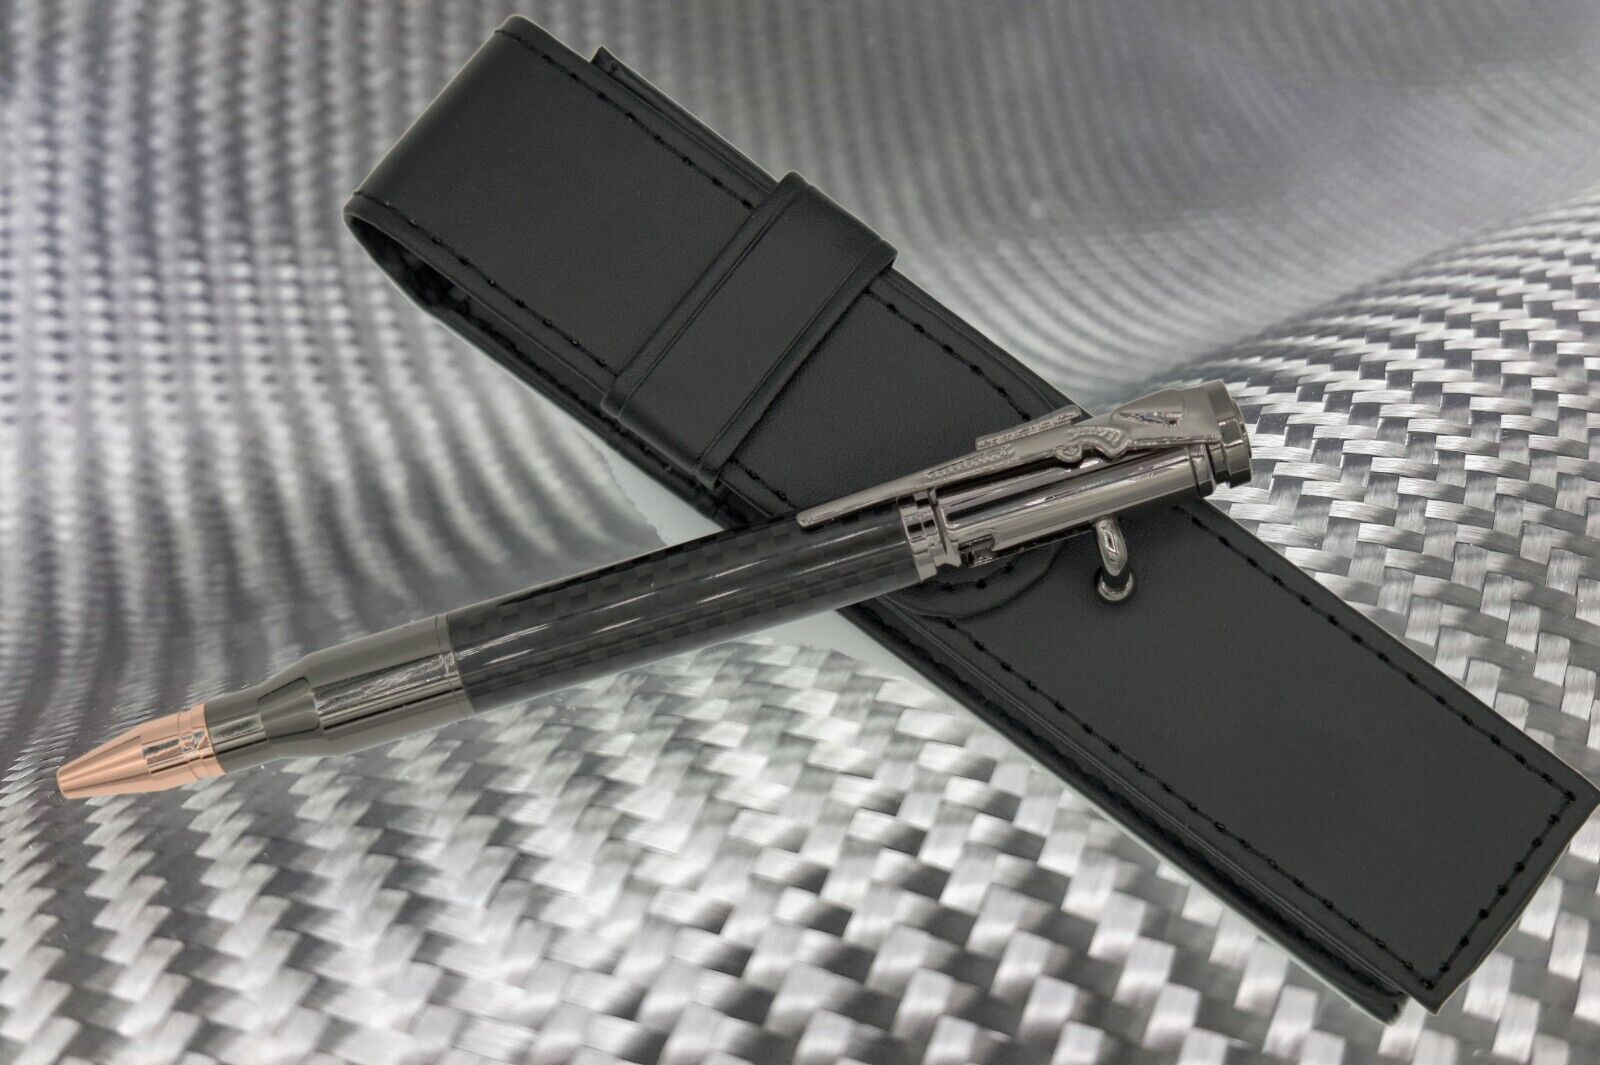 Gifts for Men Bolt Action Pen in Gun Metal Carbon Fiber Barrel PU Leather Case